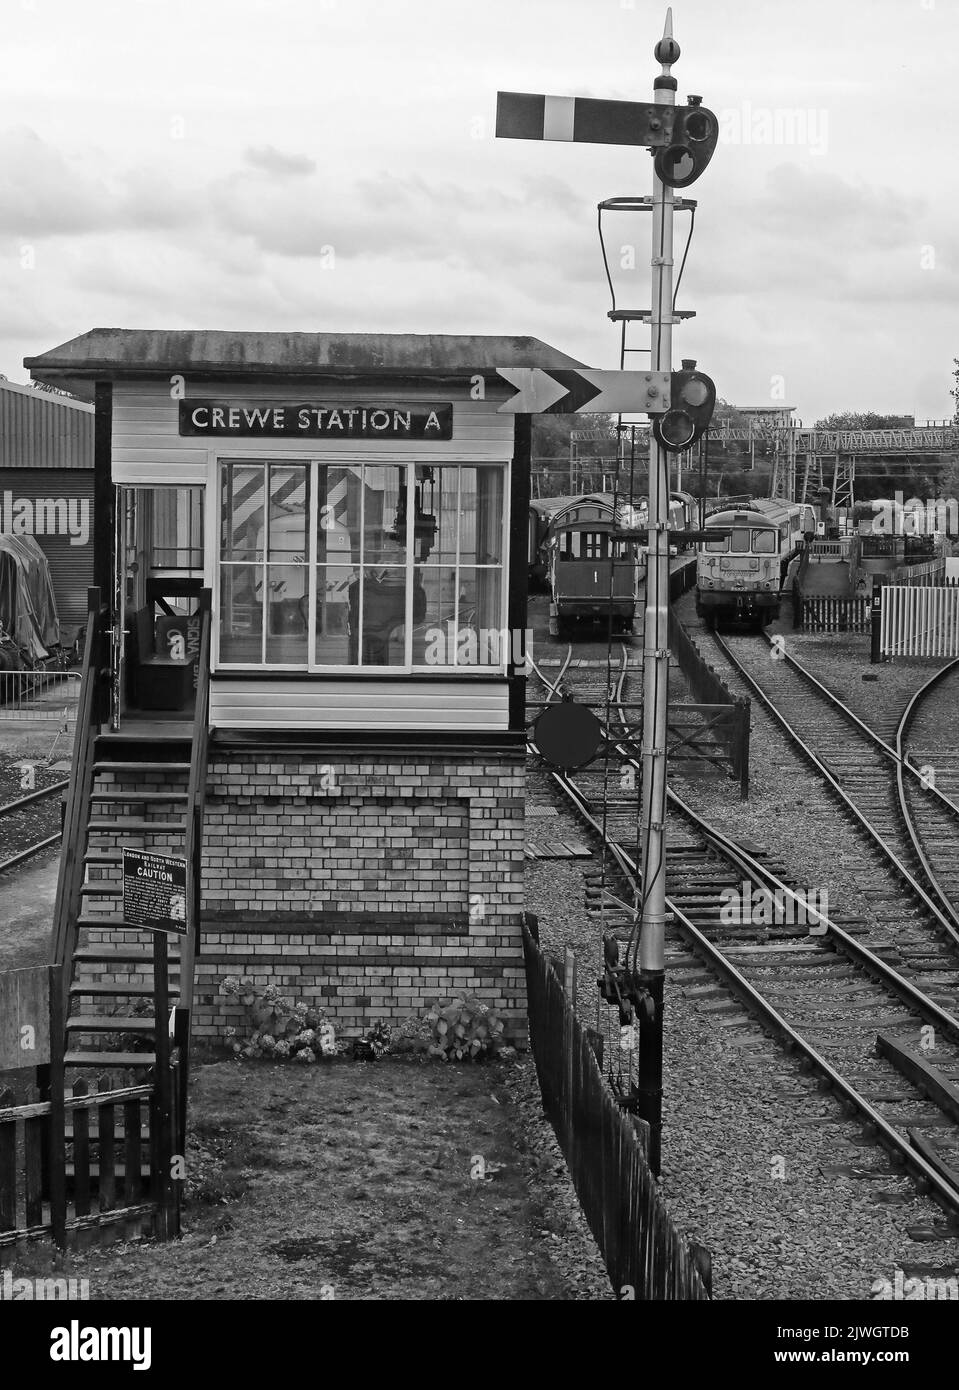 Panneau chemin de fer victorien traditionnel noir et blanc, Crewe Station A, à Cheshire, Angleterre, Royaume-Uni, CW1 2DB Banque D'Images